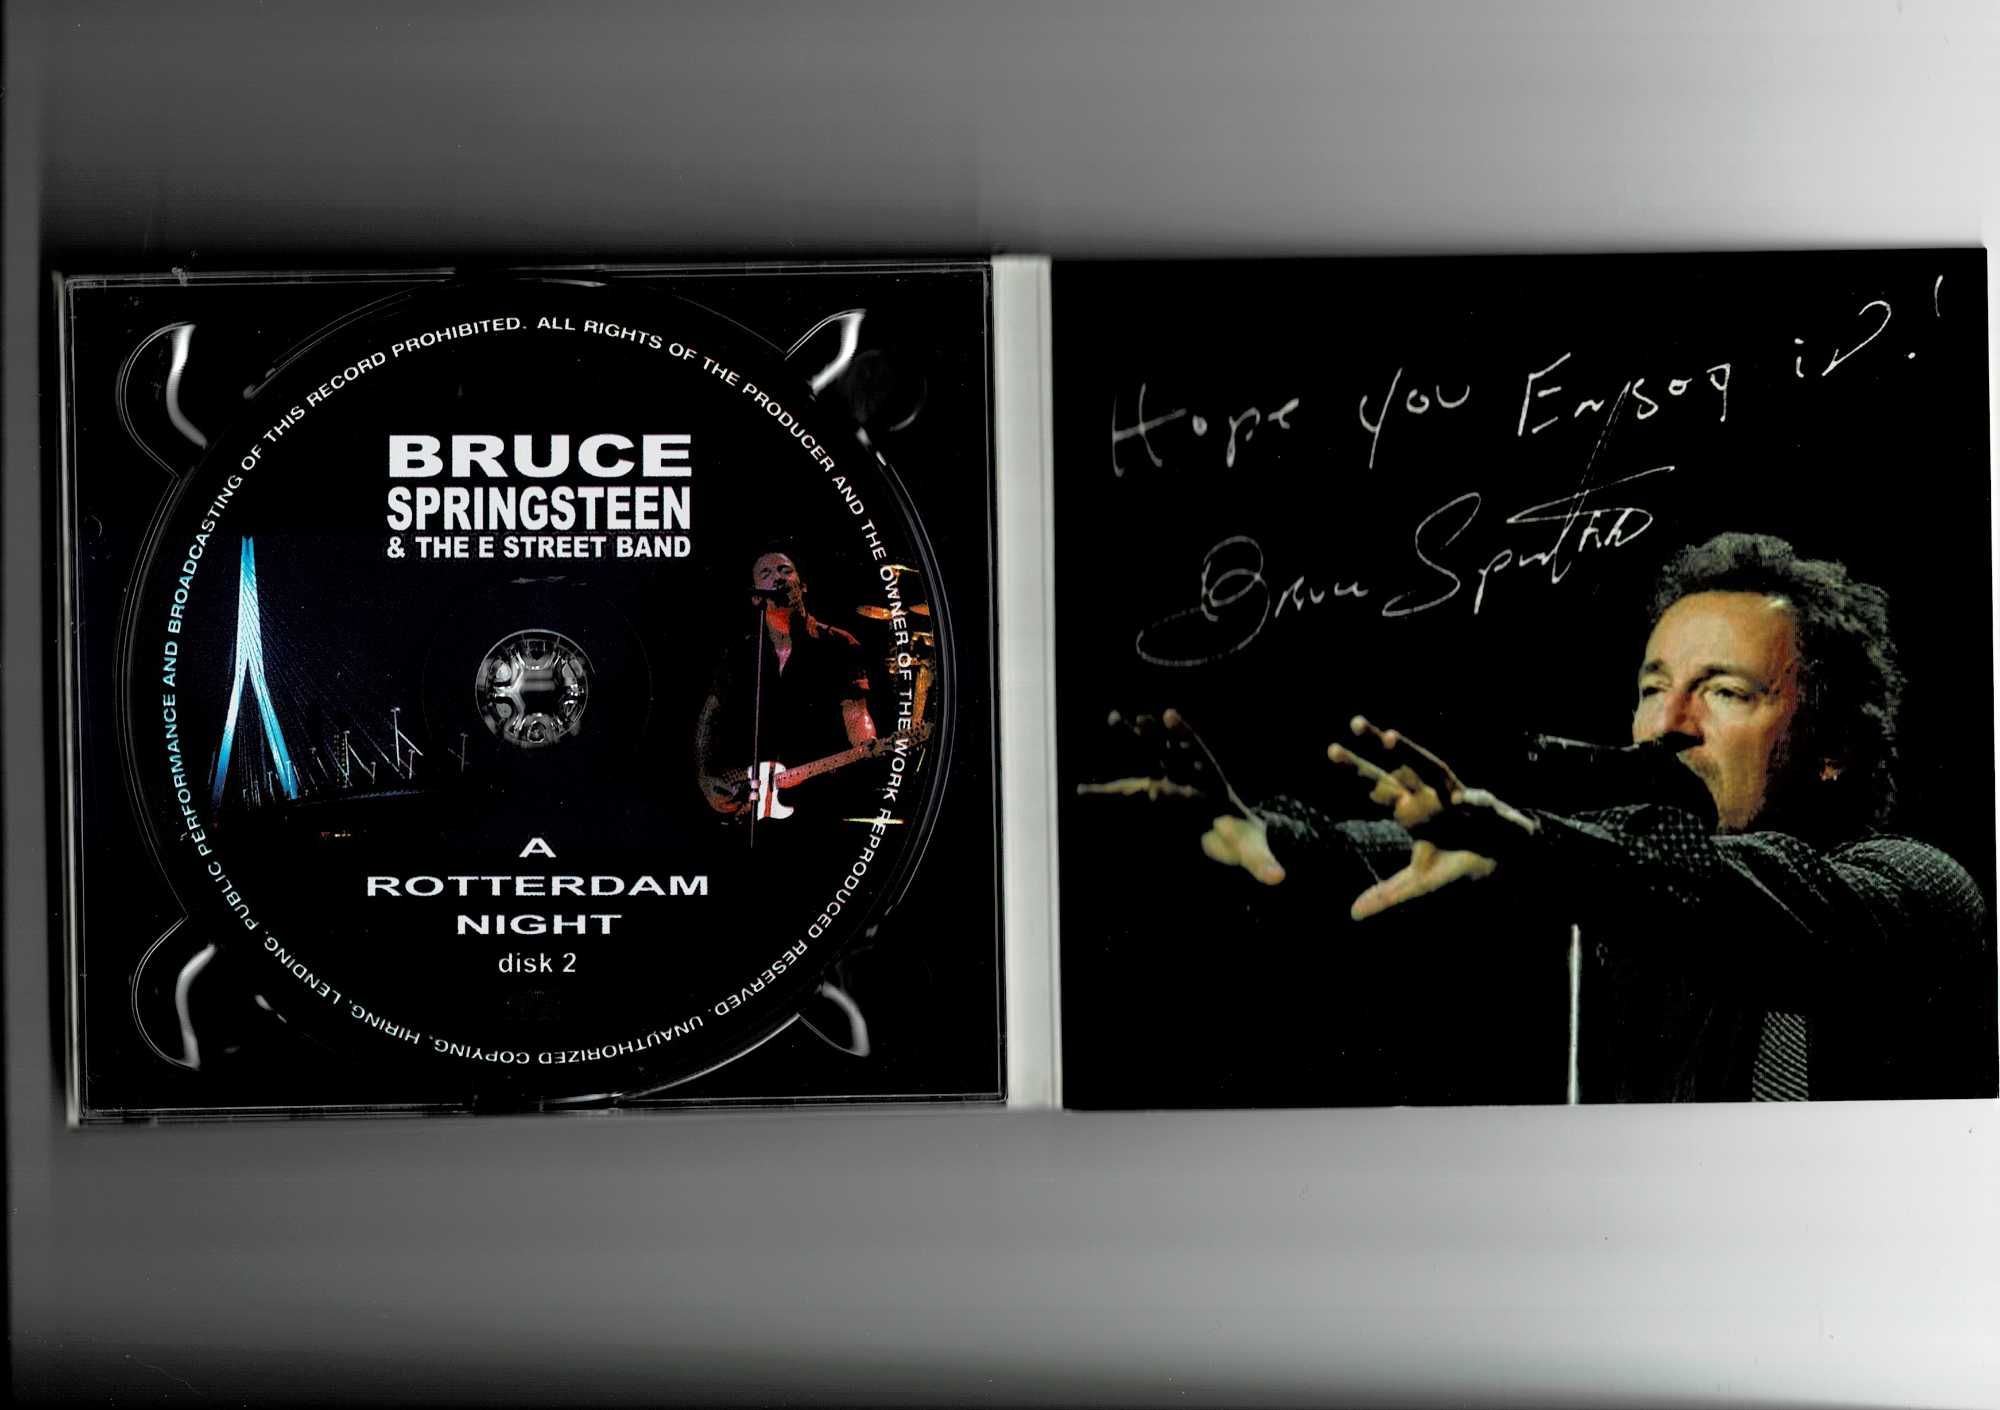 BRUCE SPRINGSTEEN E Street Band - A Rotterdam Night 2 CD Digipak 2002